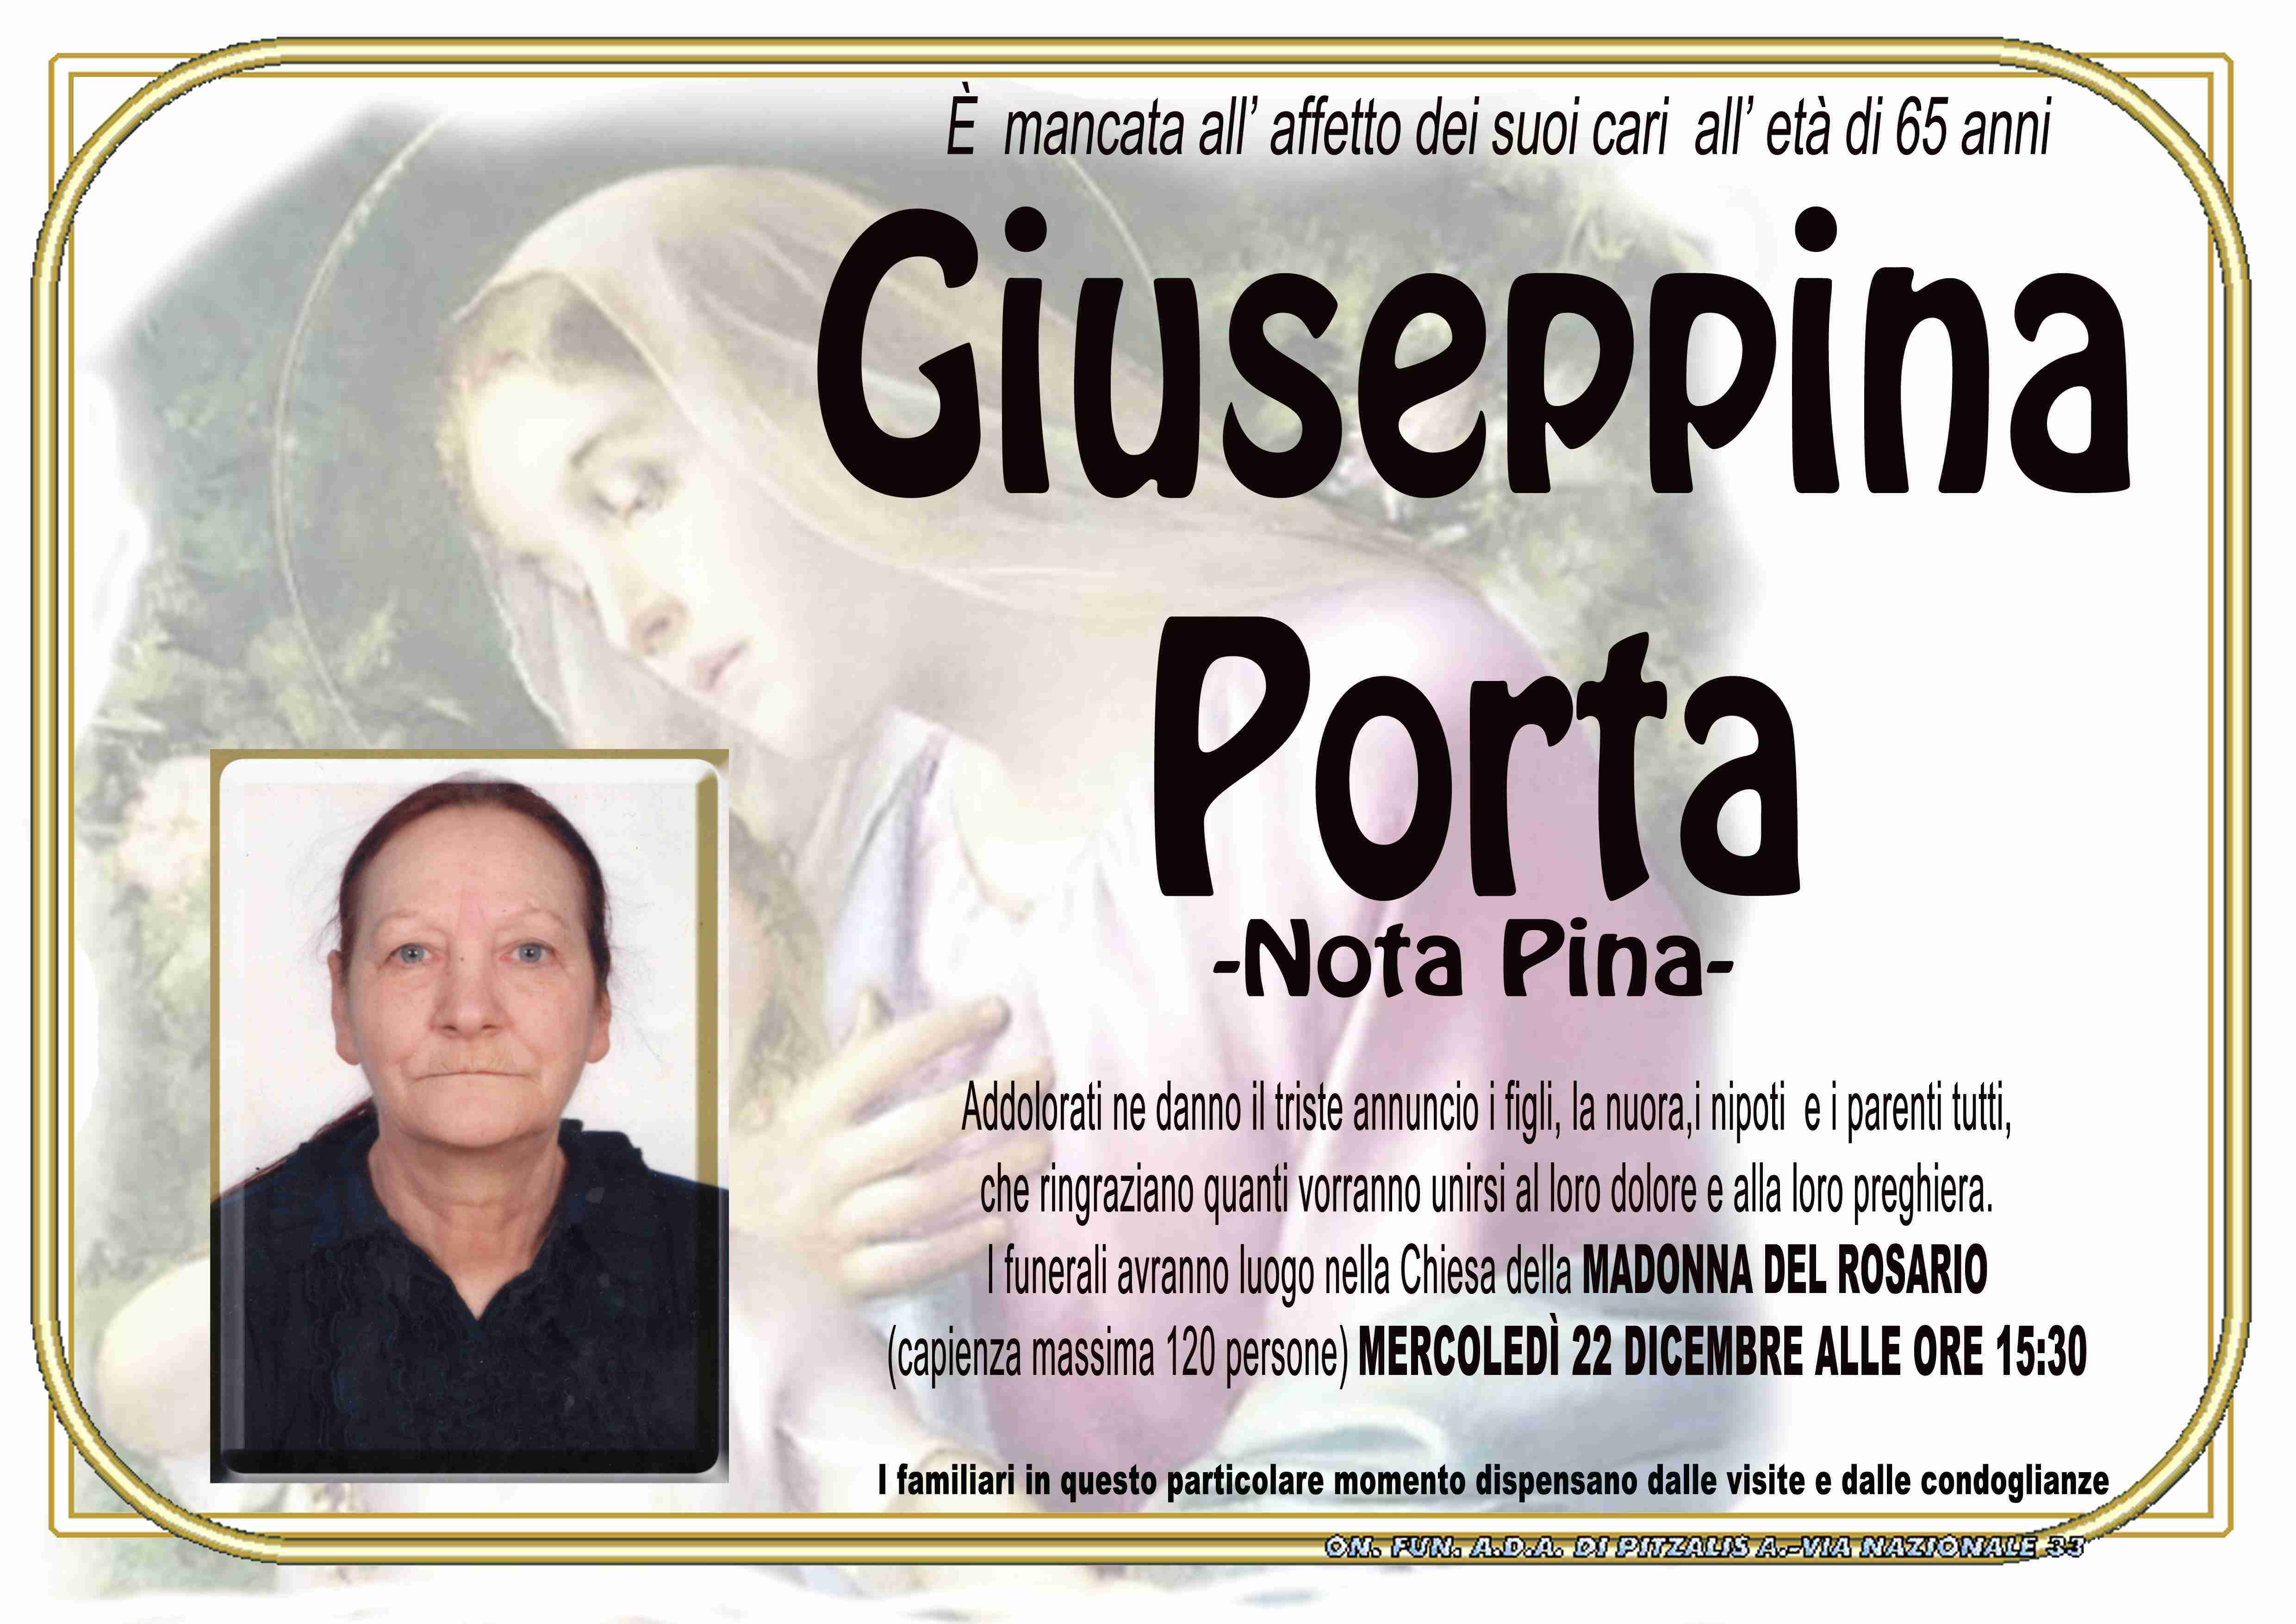 Giuseppina Porta